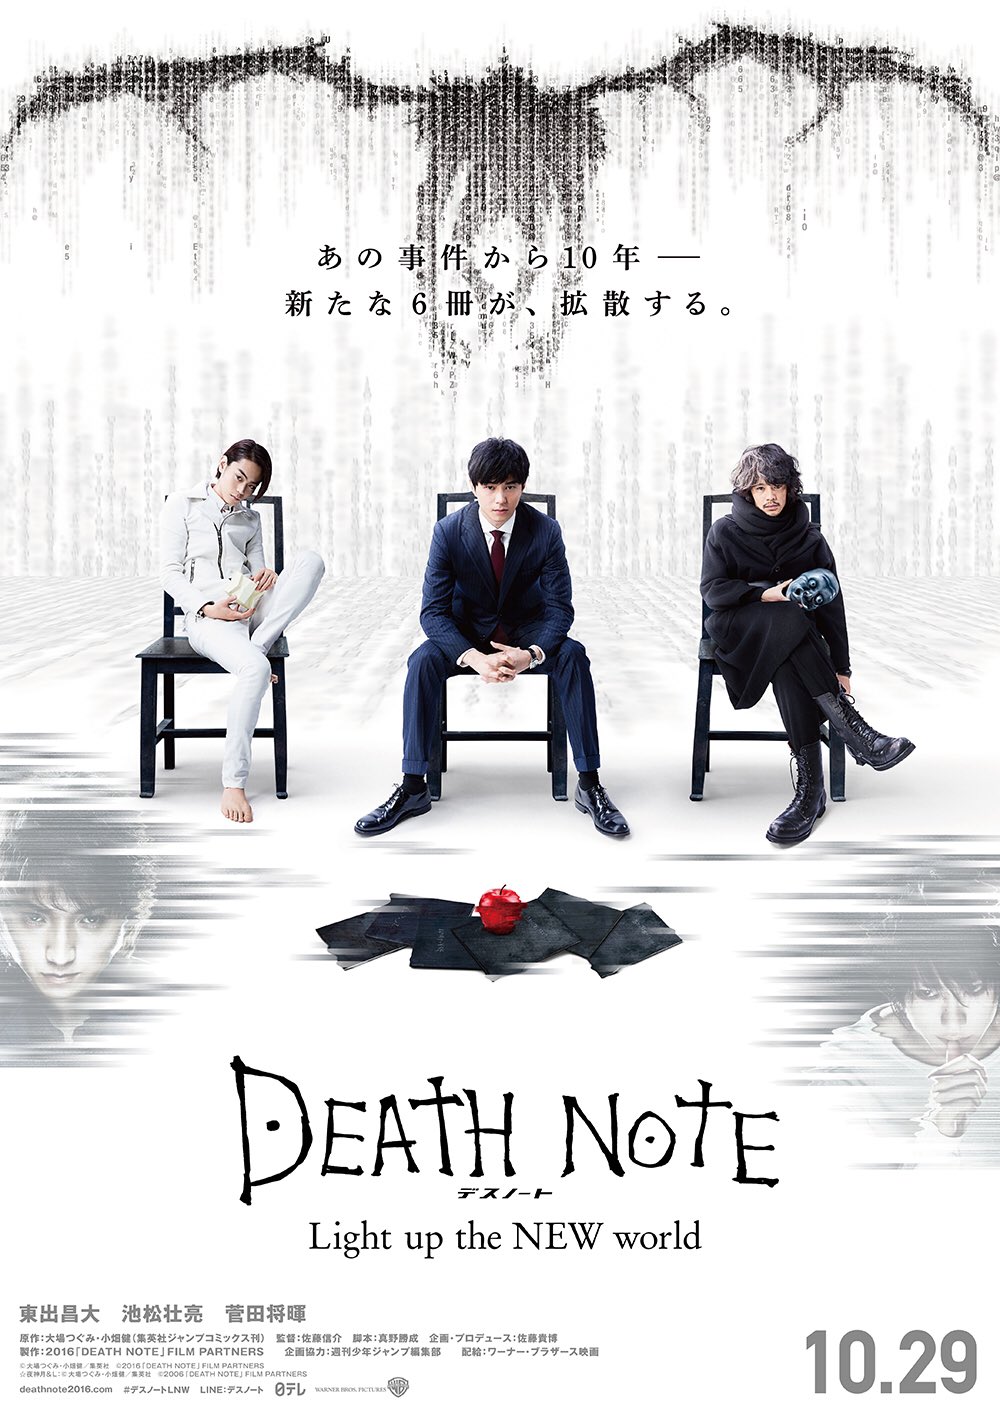 Novo trailer de Death Note revela que filme terá seis 'Kiras